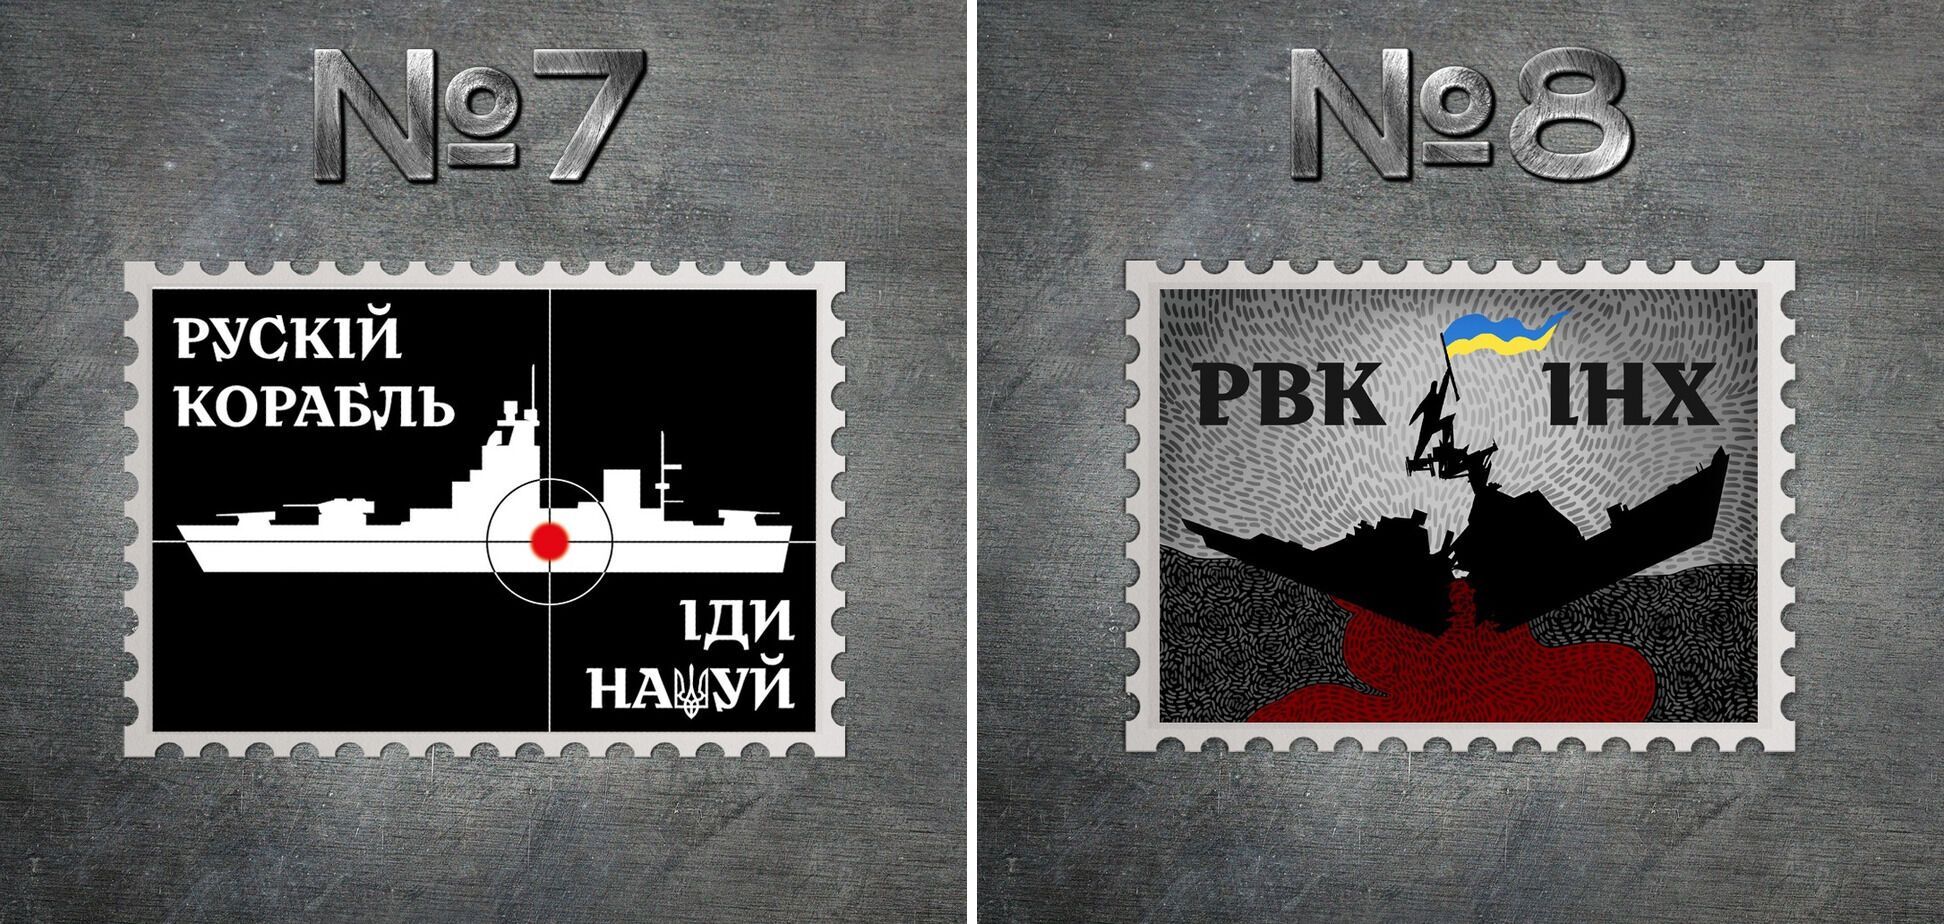 Укрпошта оголосила конкурс на розробку ескізу поштової марки ''Русский военный корабль, иди на*уй''